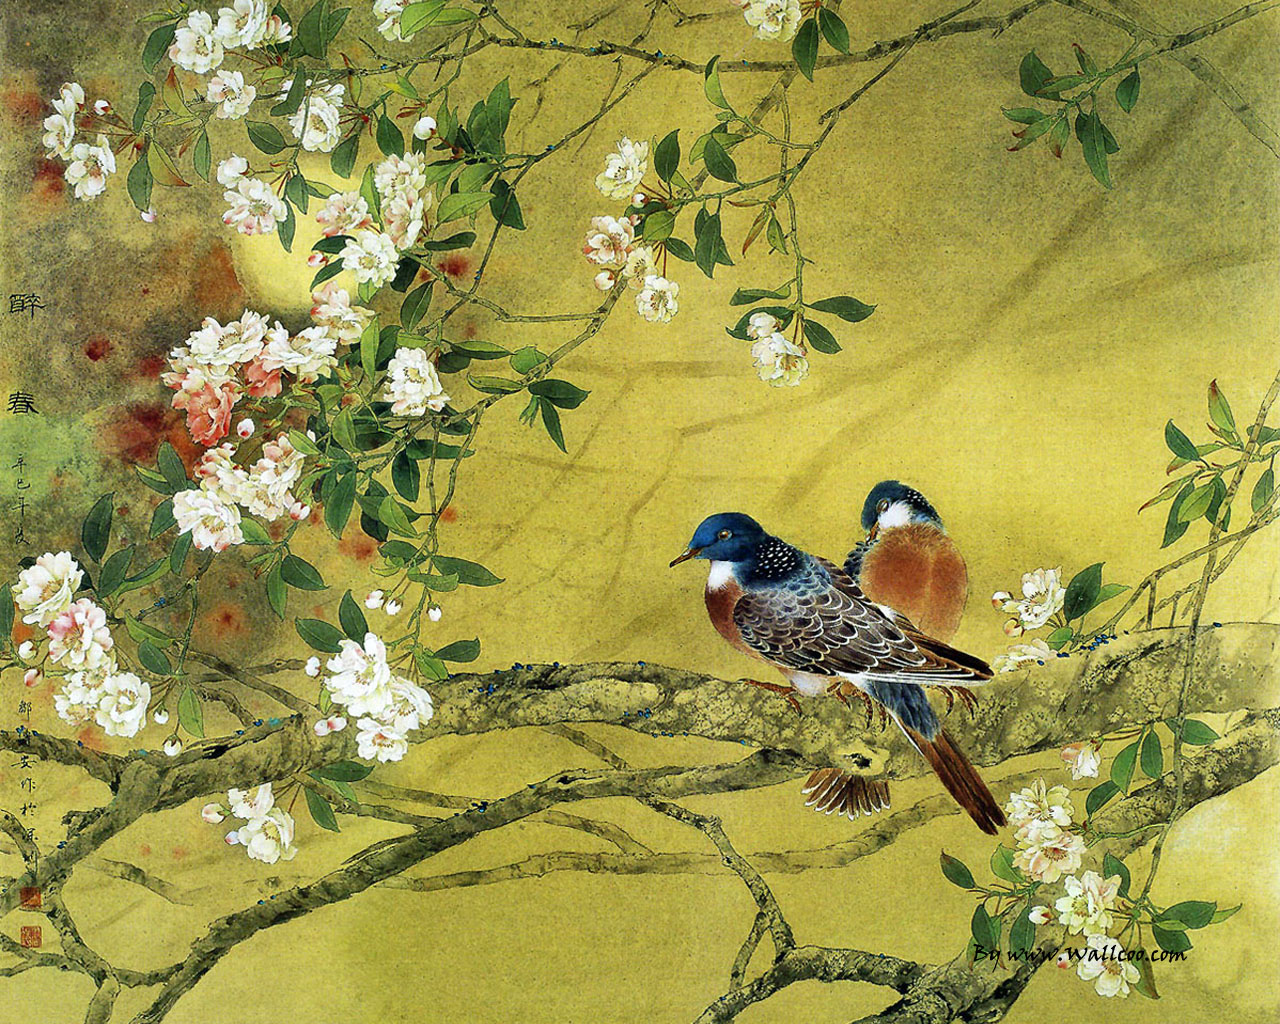 Flower And Bird Painting By Zou Chuan An No Wallpaper